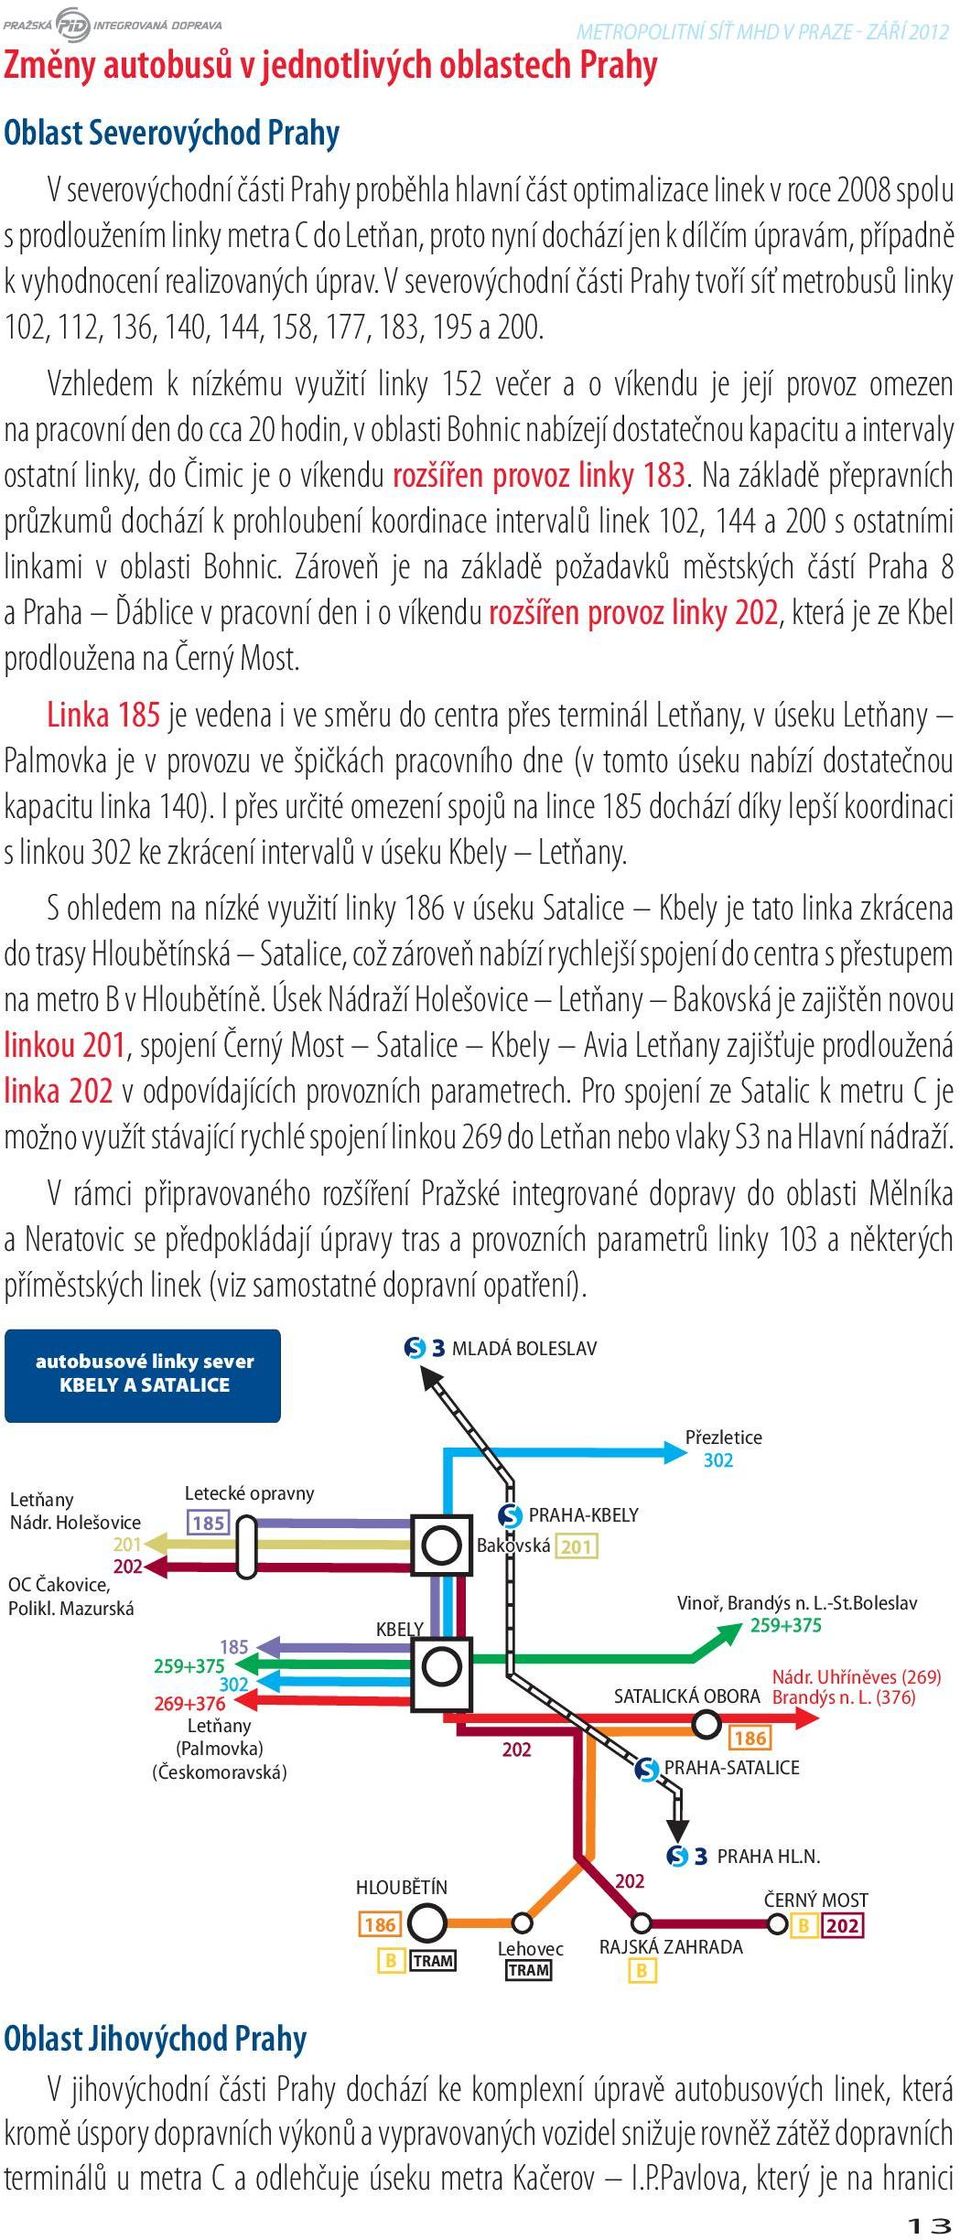 Vzhledem k nízkému využití linky 152 večer a o víkendu je její provoz omezen na pracovní den do cca 20 hodin, v oblasti Bohnic nabízejí dostatečnou kapacitu a intervaly ostatní linky, do Čimic je o